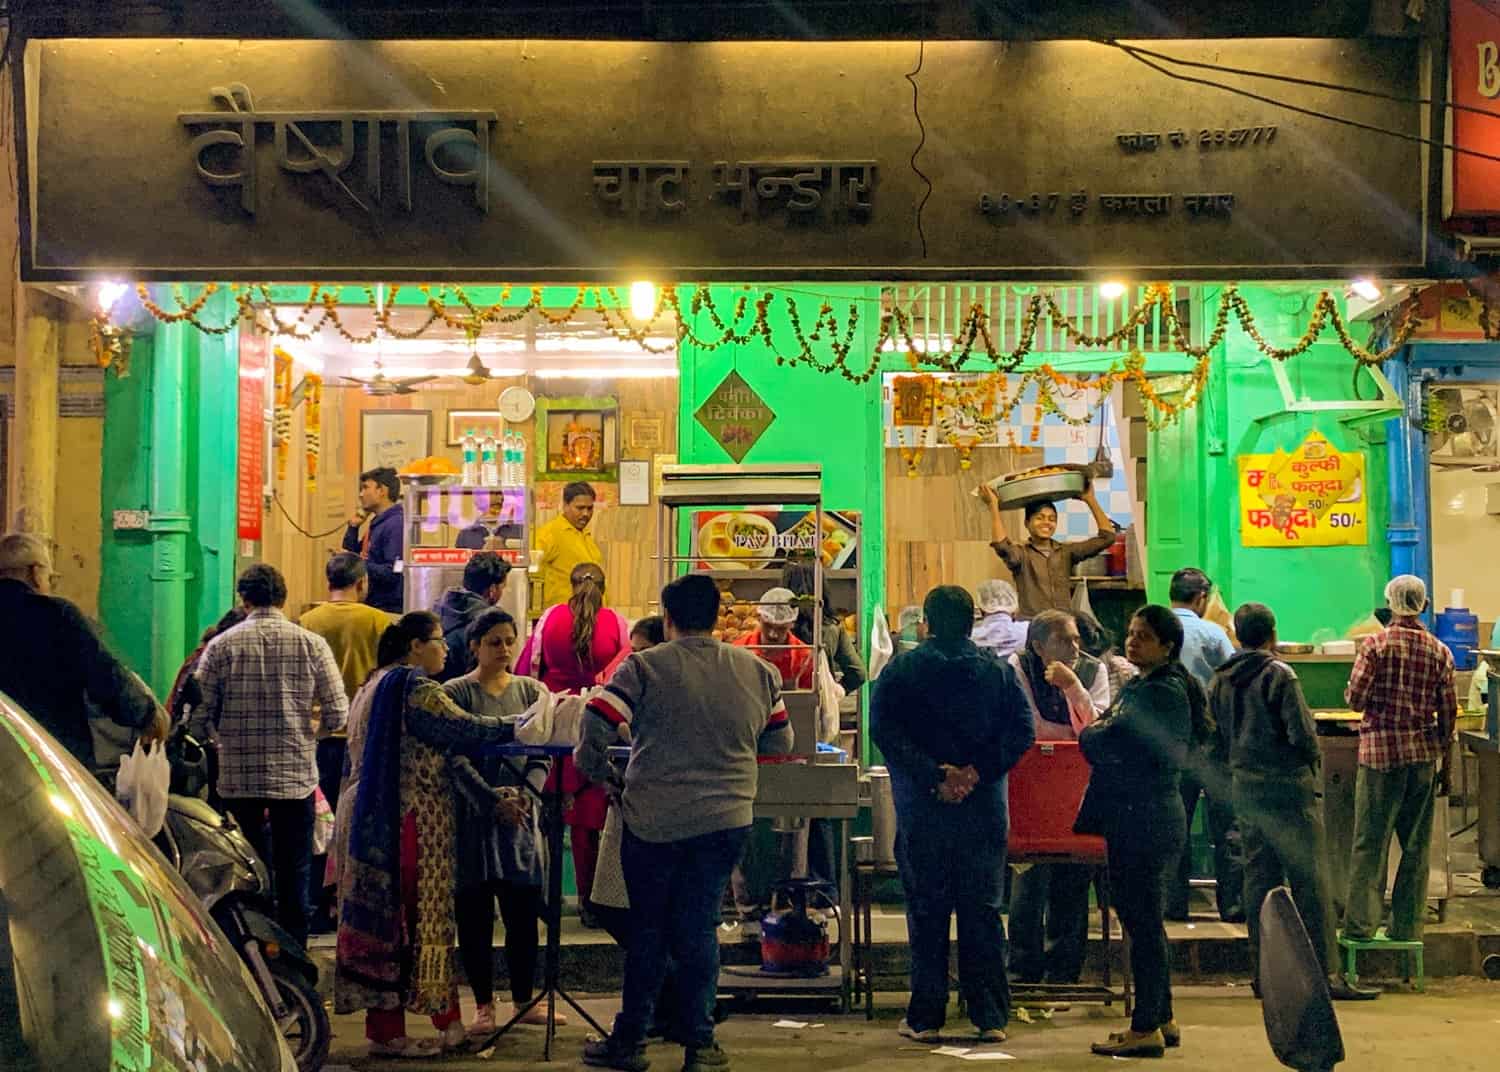 Restaurant at night in New Delhi